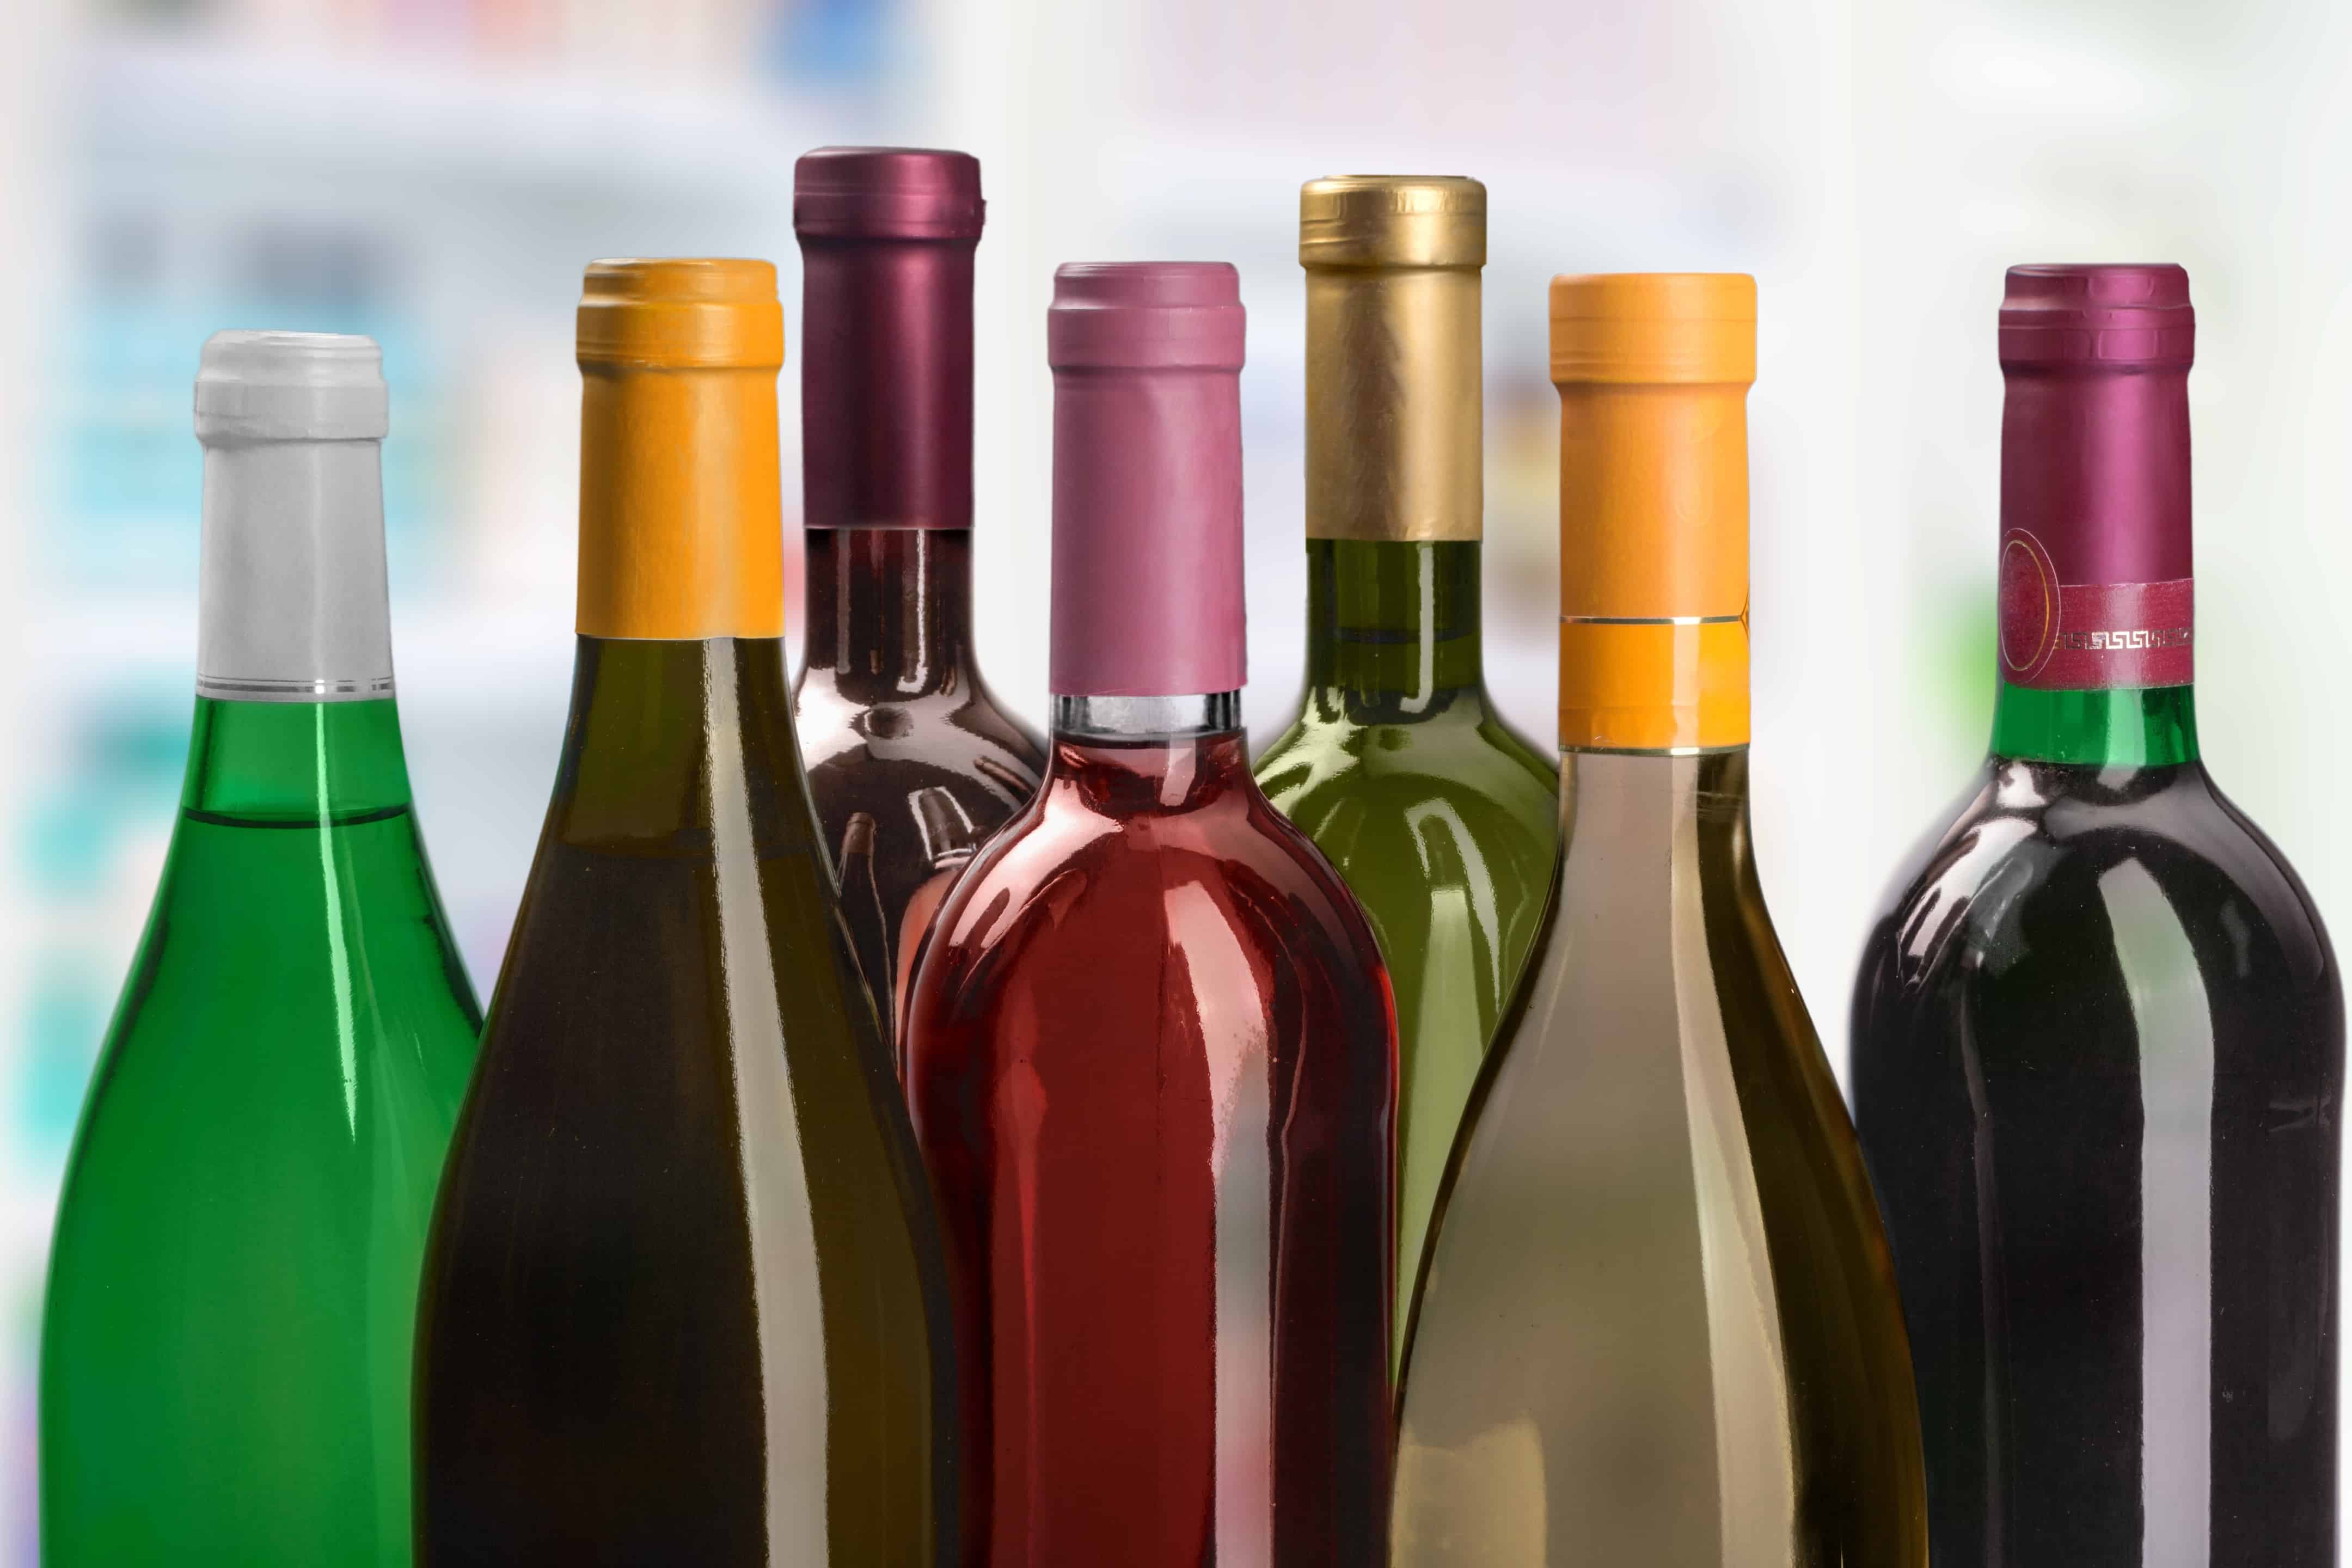 How to pack wine bottles - Seven bottles of wine- Mayflower